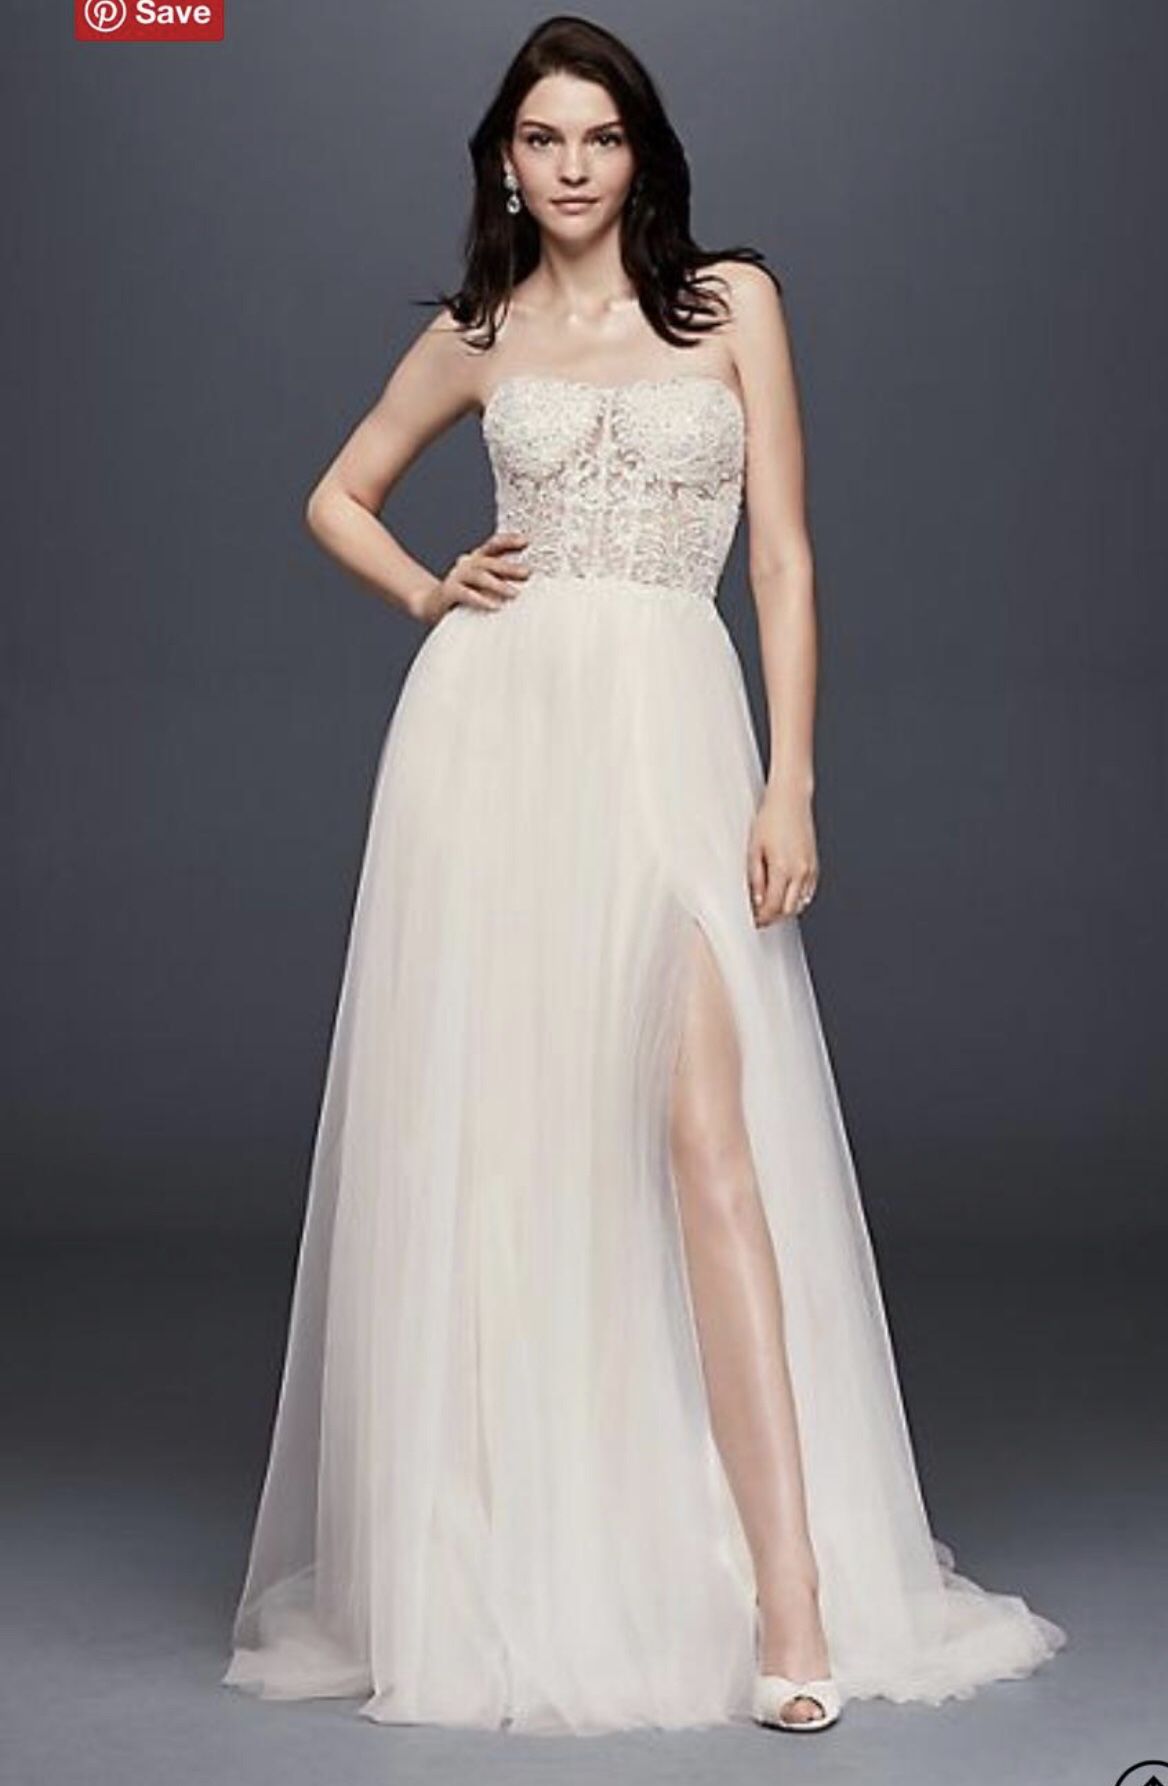 Beautiful Bridal Dress + Veil